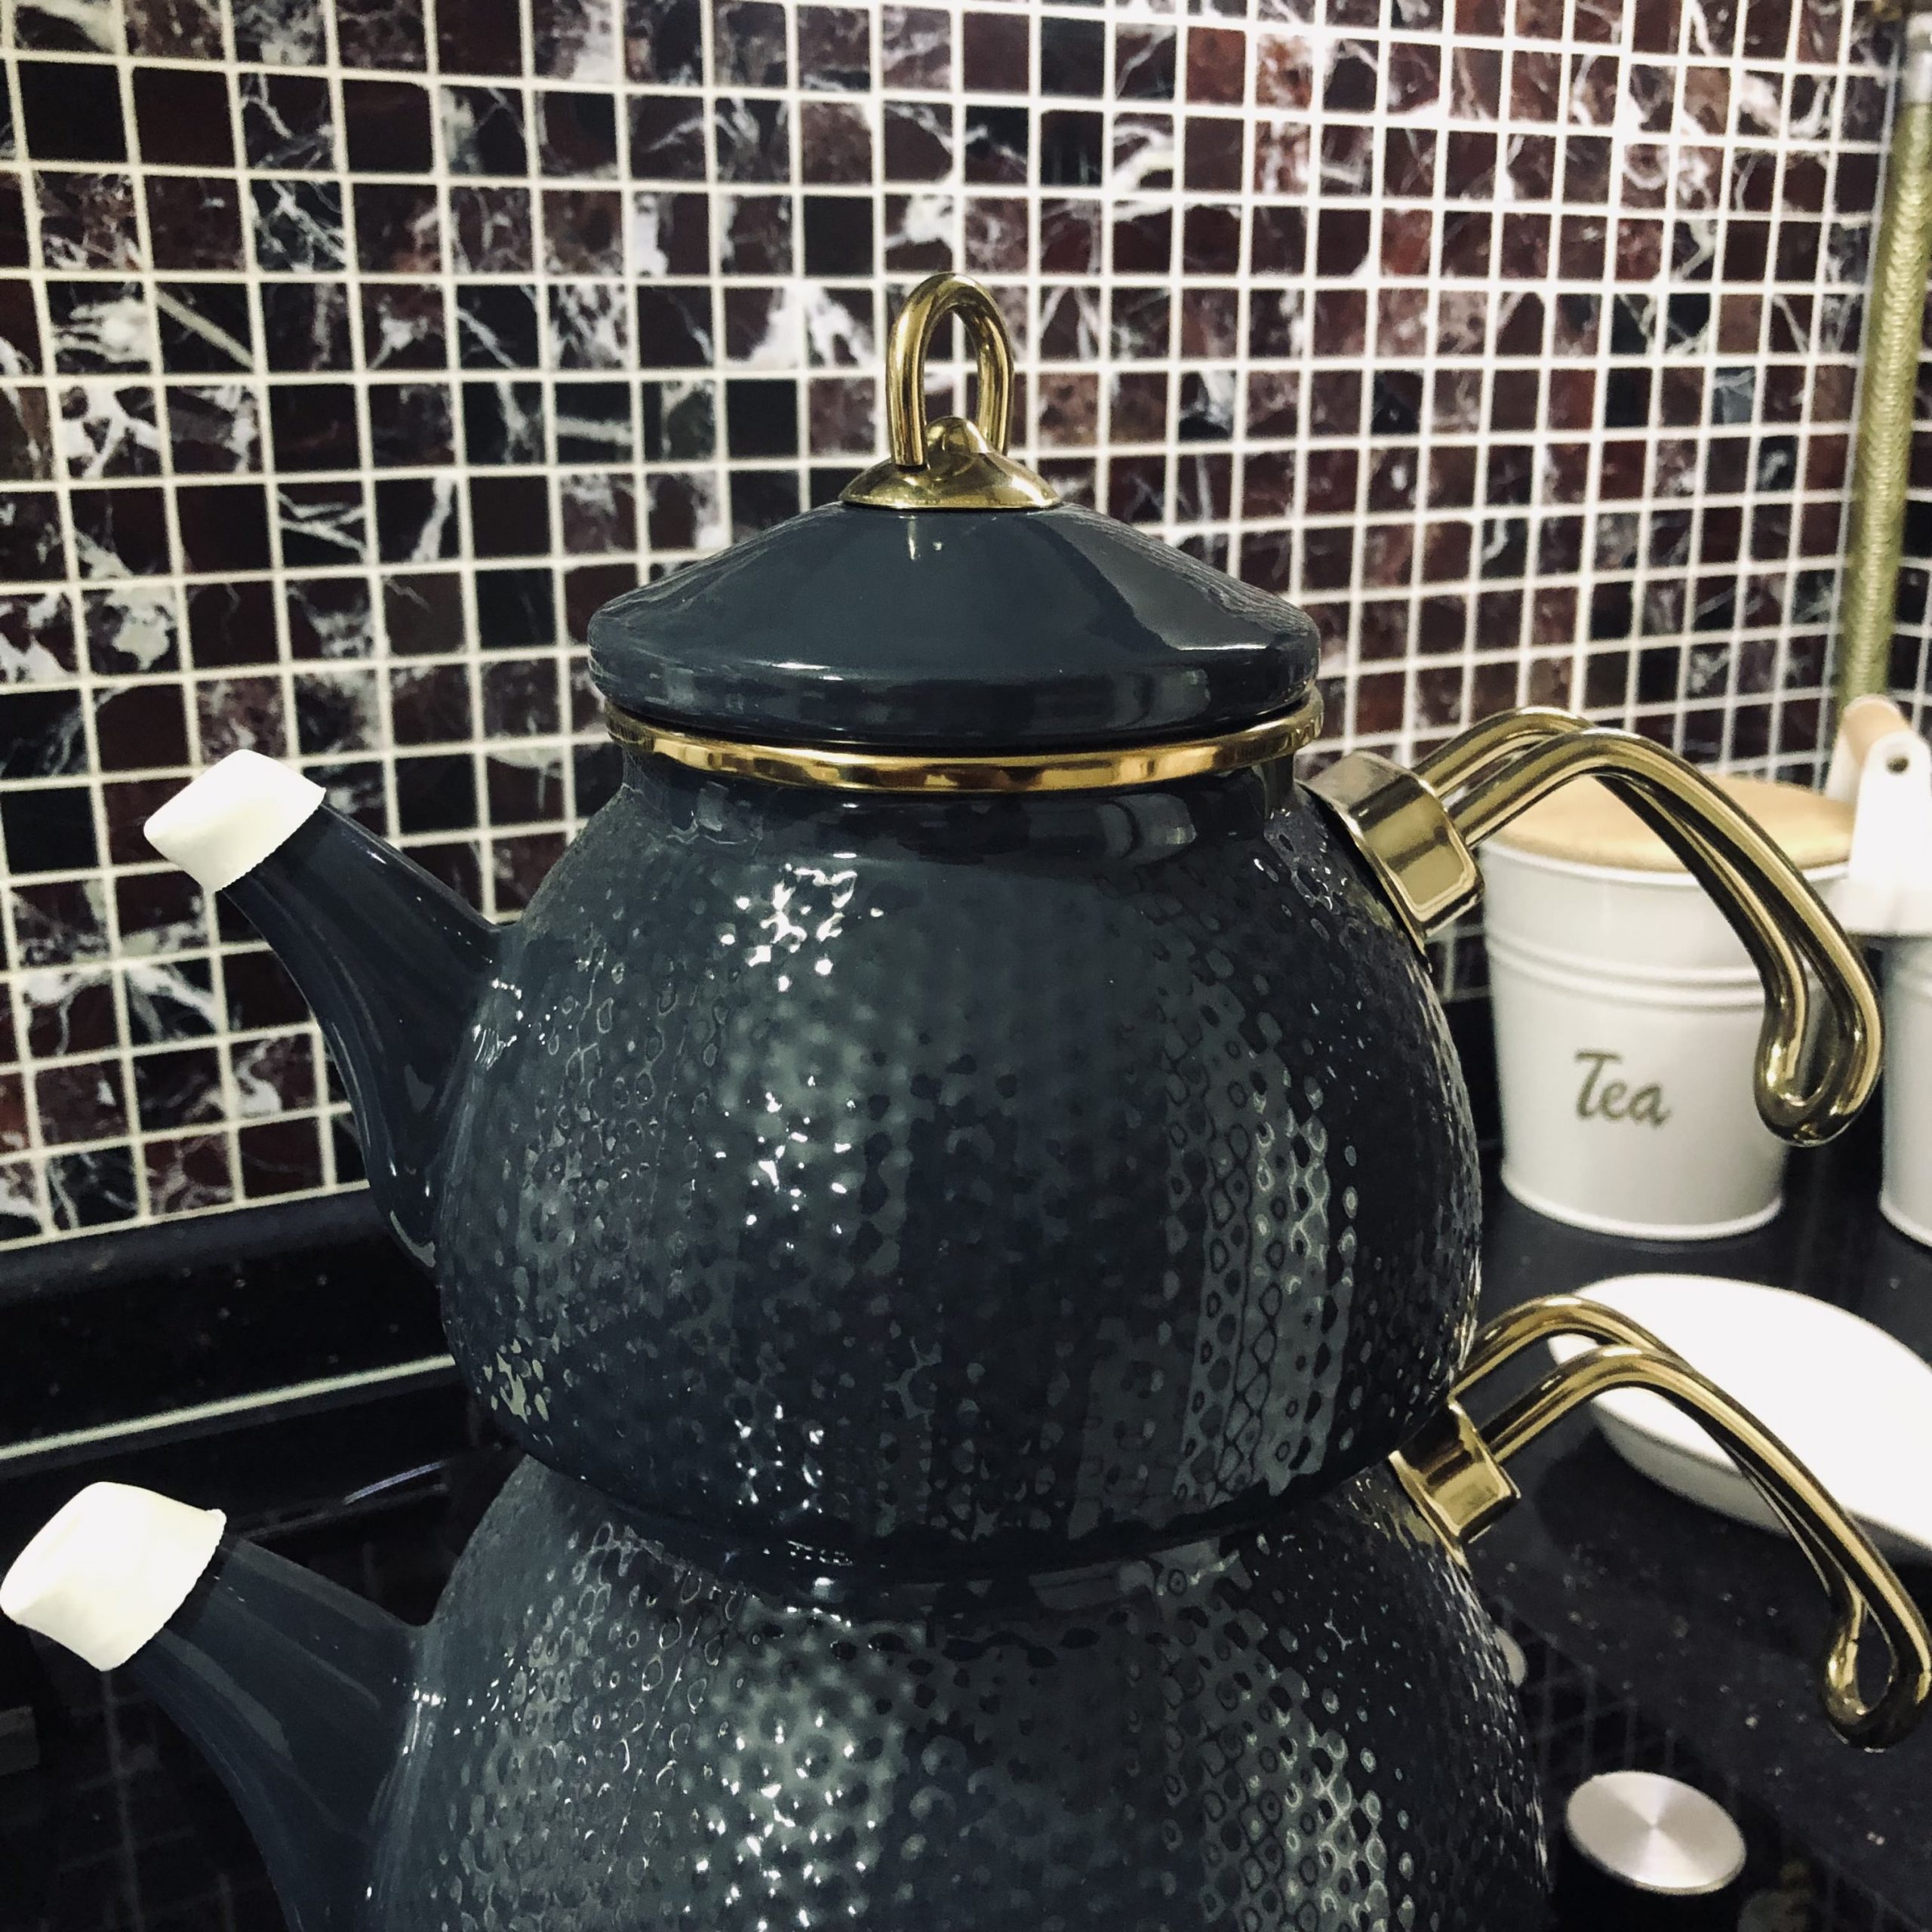 https://traditionalturk.com/wp-content/uploads/2021/12/anthracite-color-ceremony-enamel-turkish-tea-pot-kettle-3-scaled.jpeg